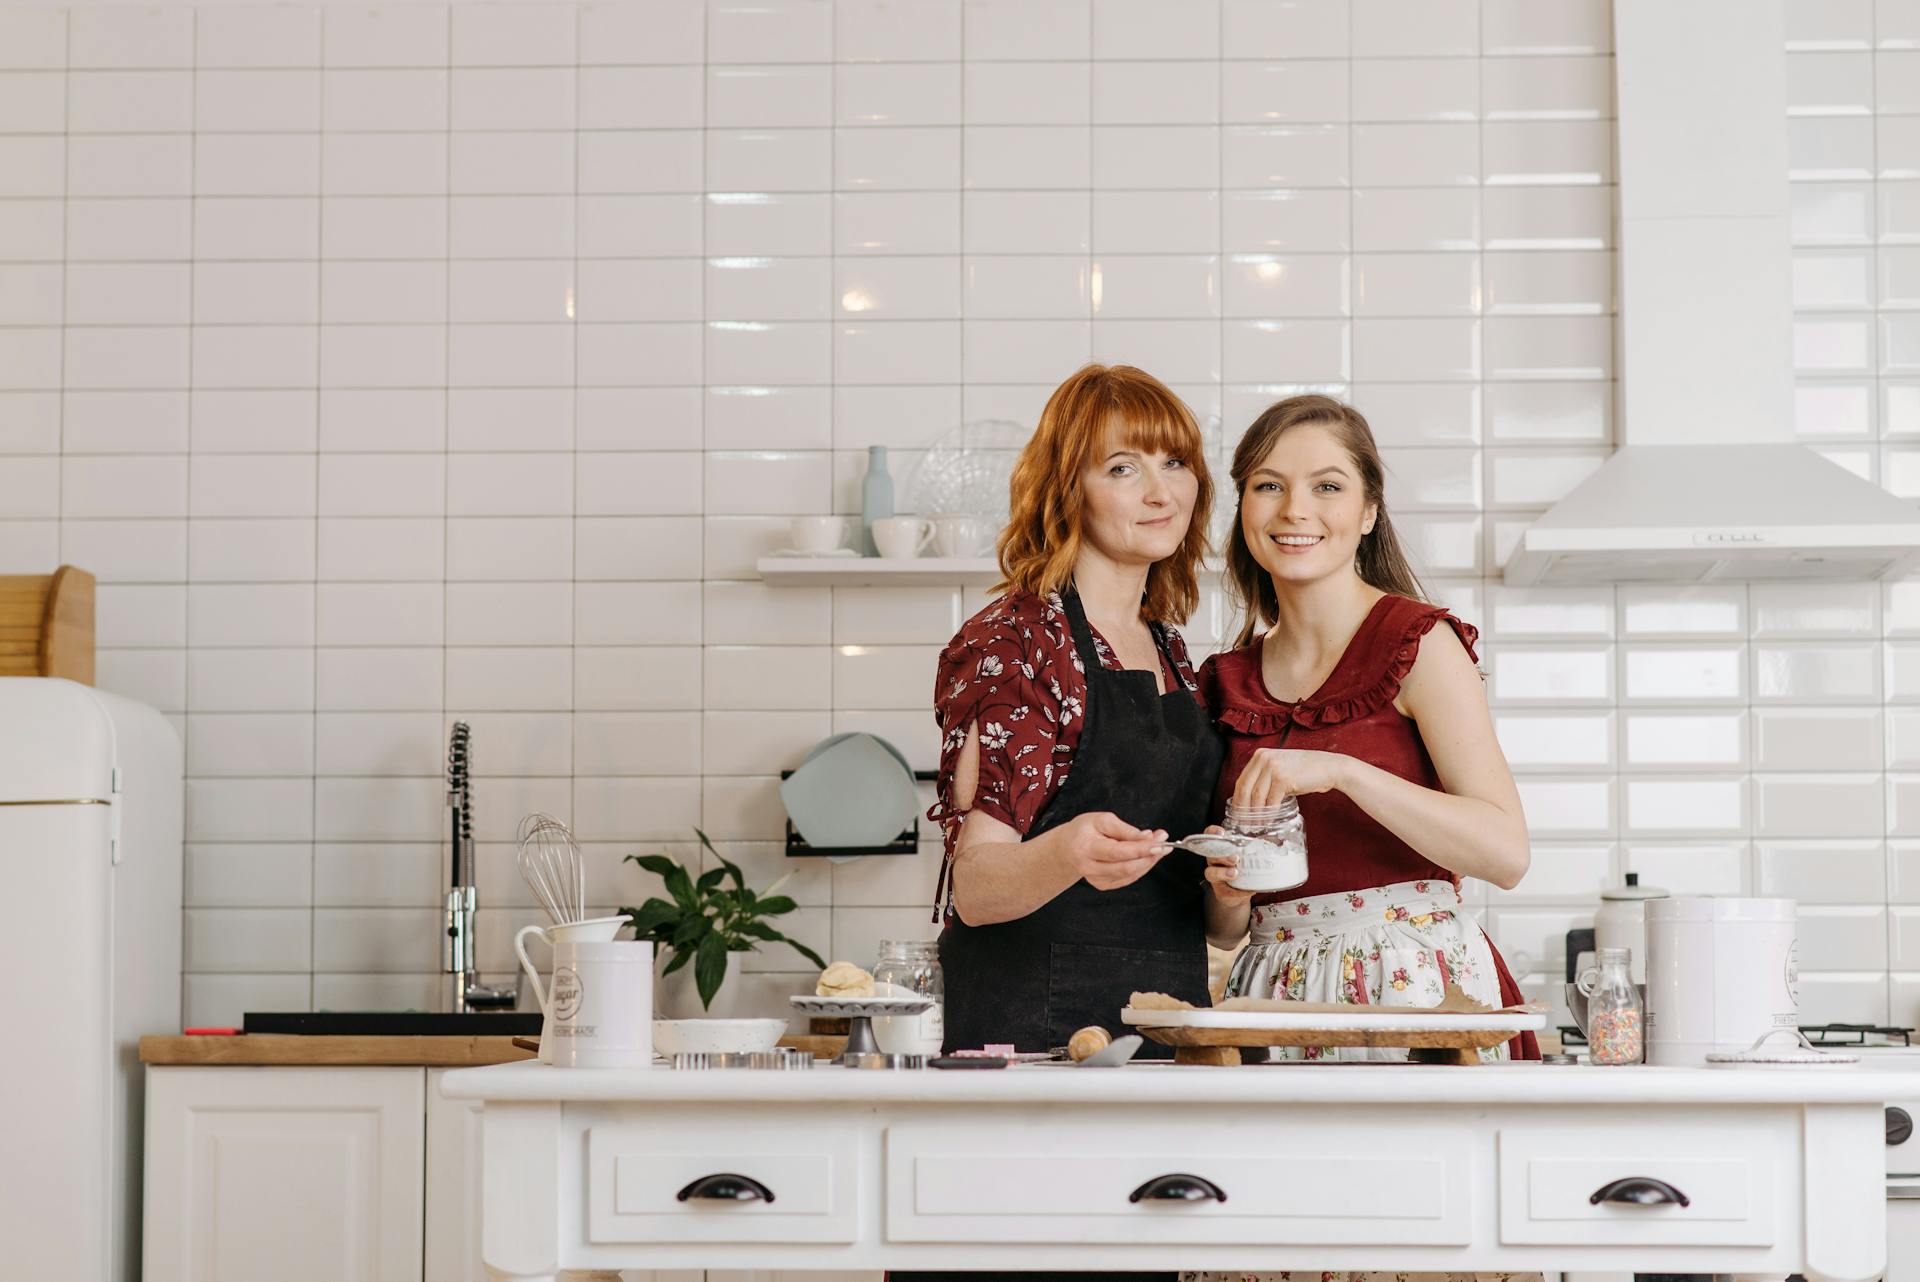 Eine Mutter mit ihrer Tochter in der Küche | Quelle: Pexels